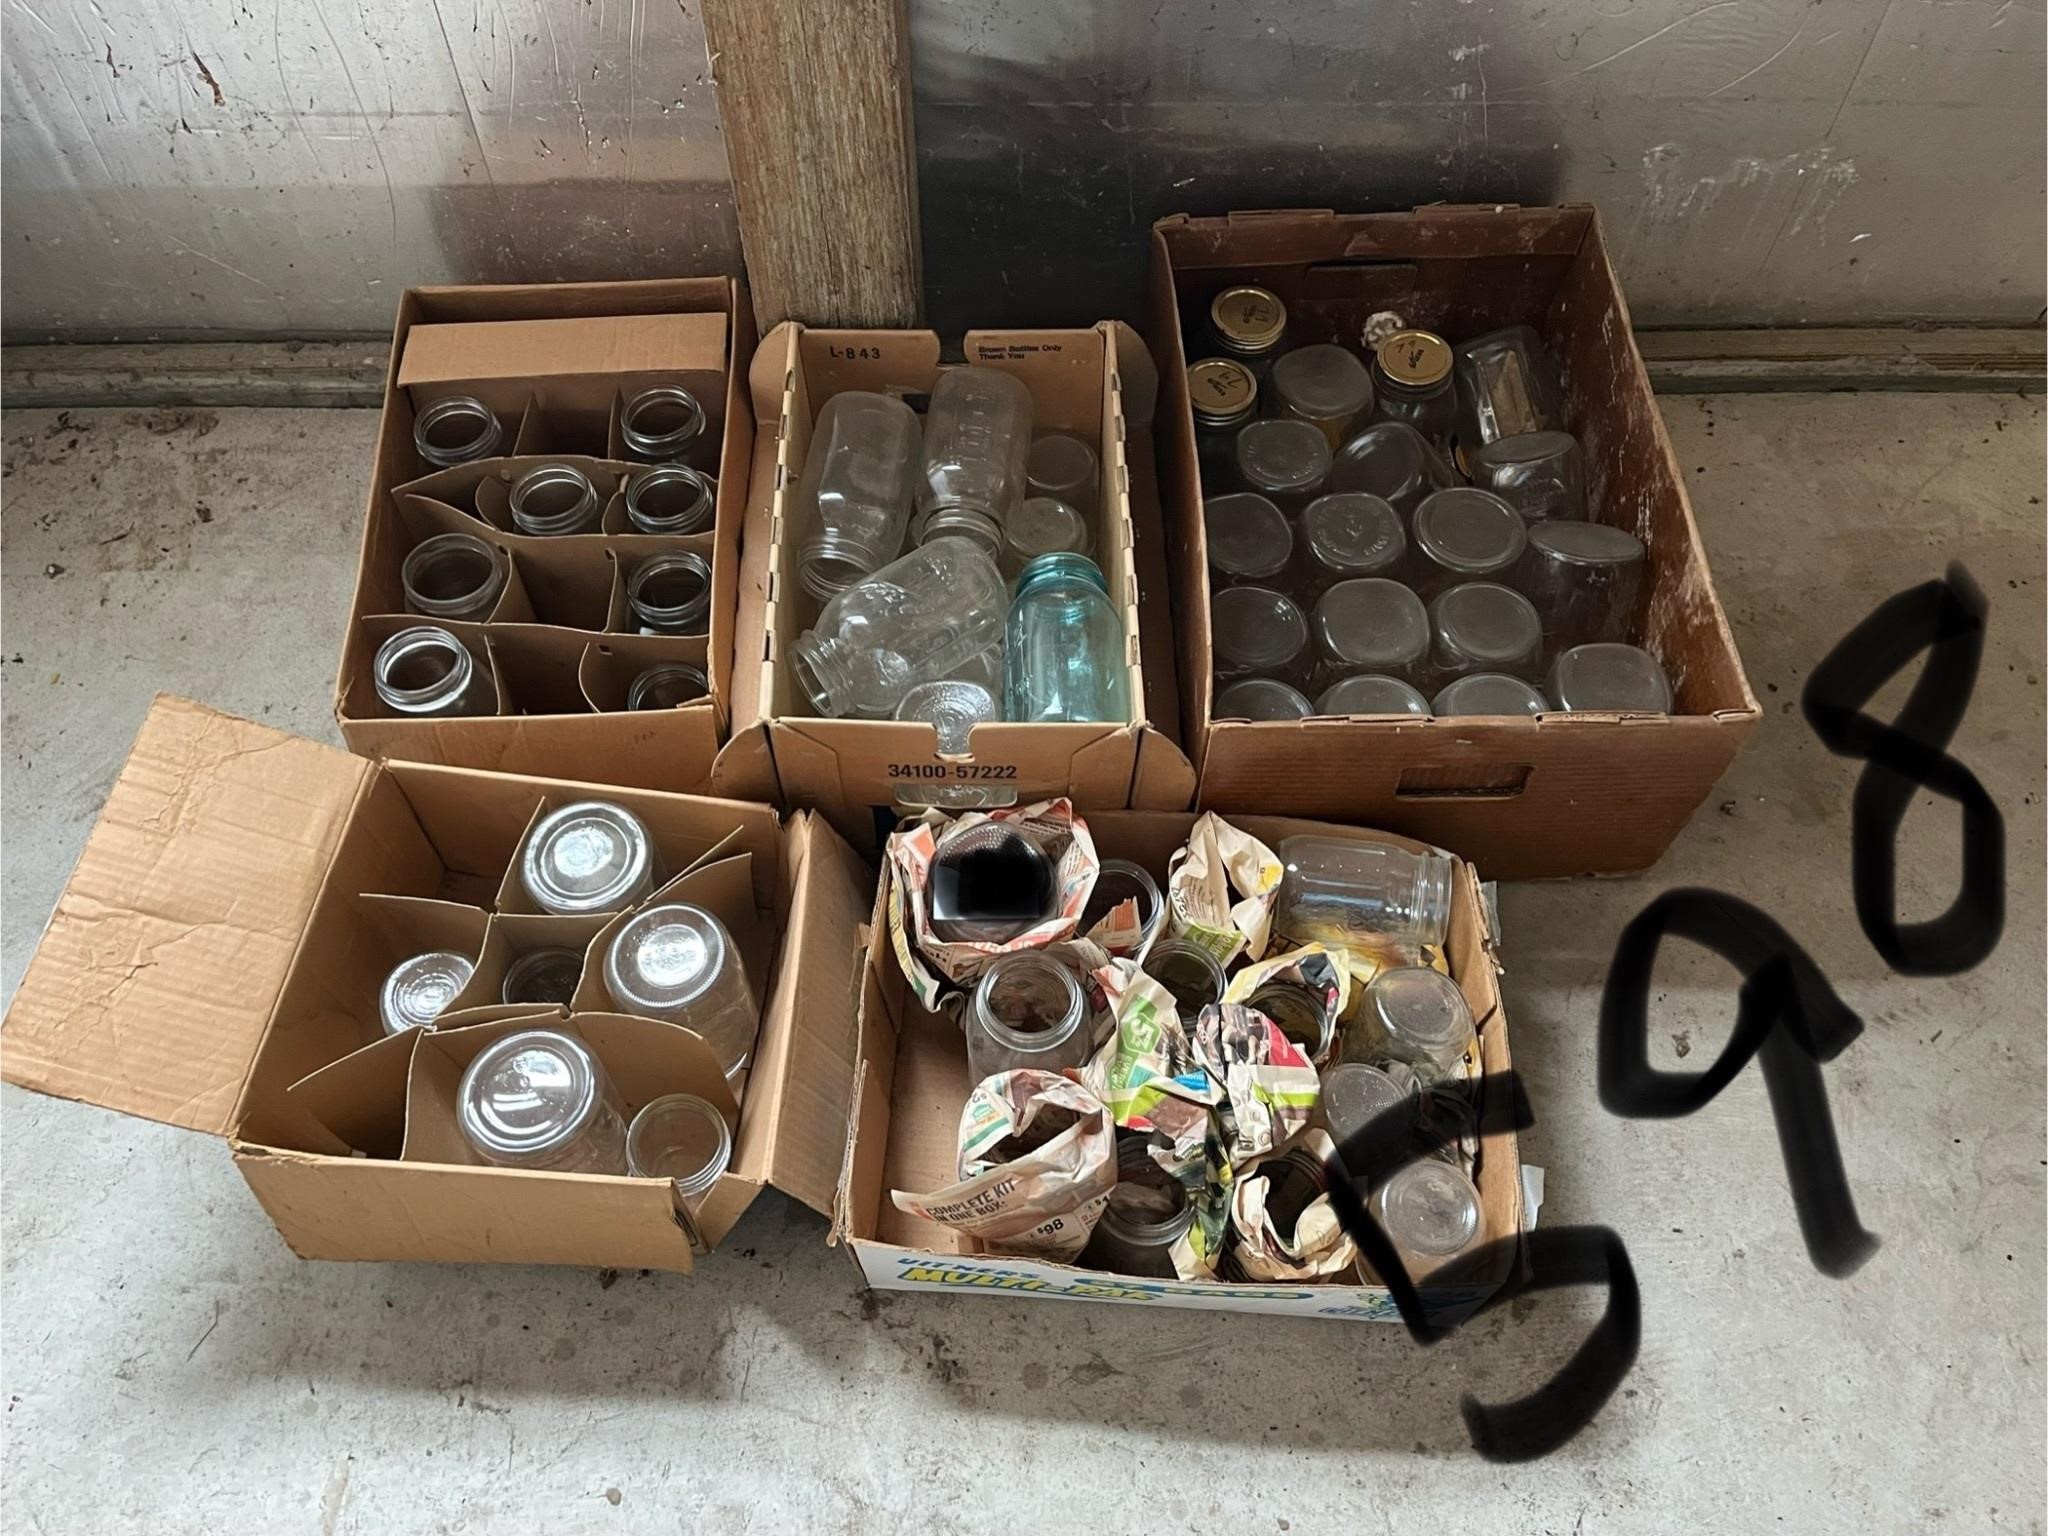 Boxes of mason jars/canning jars